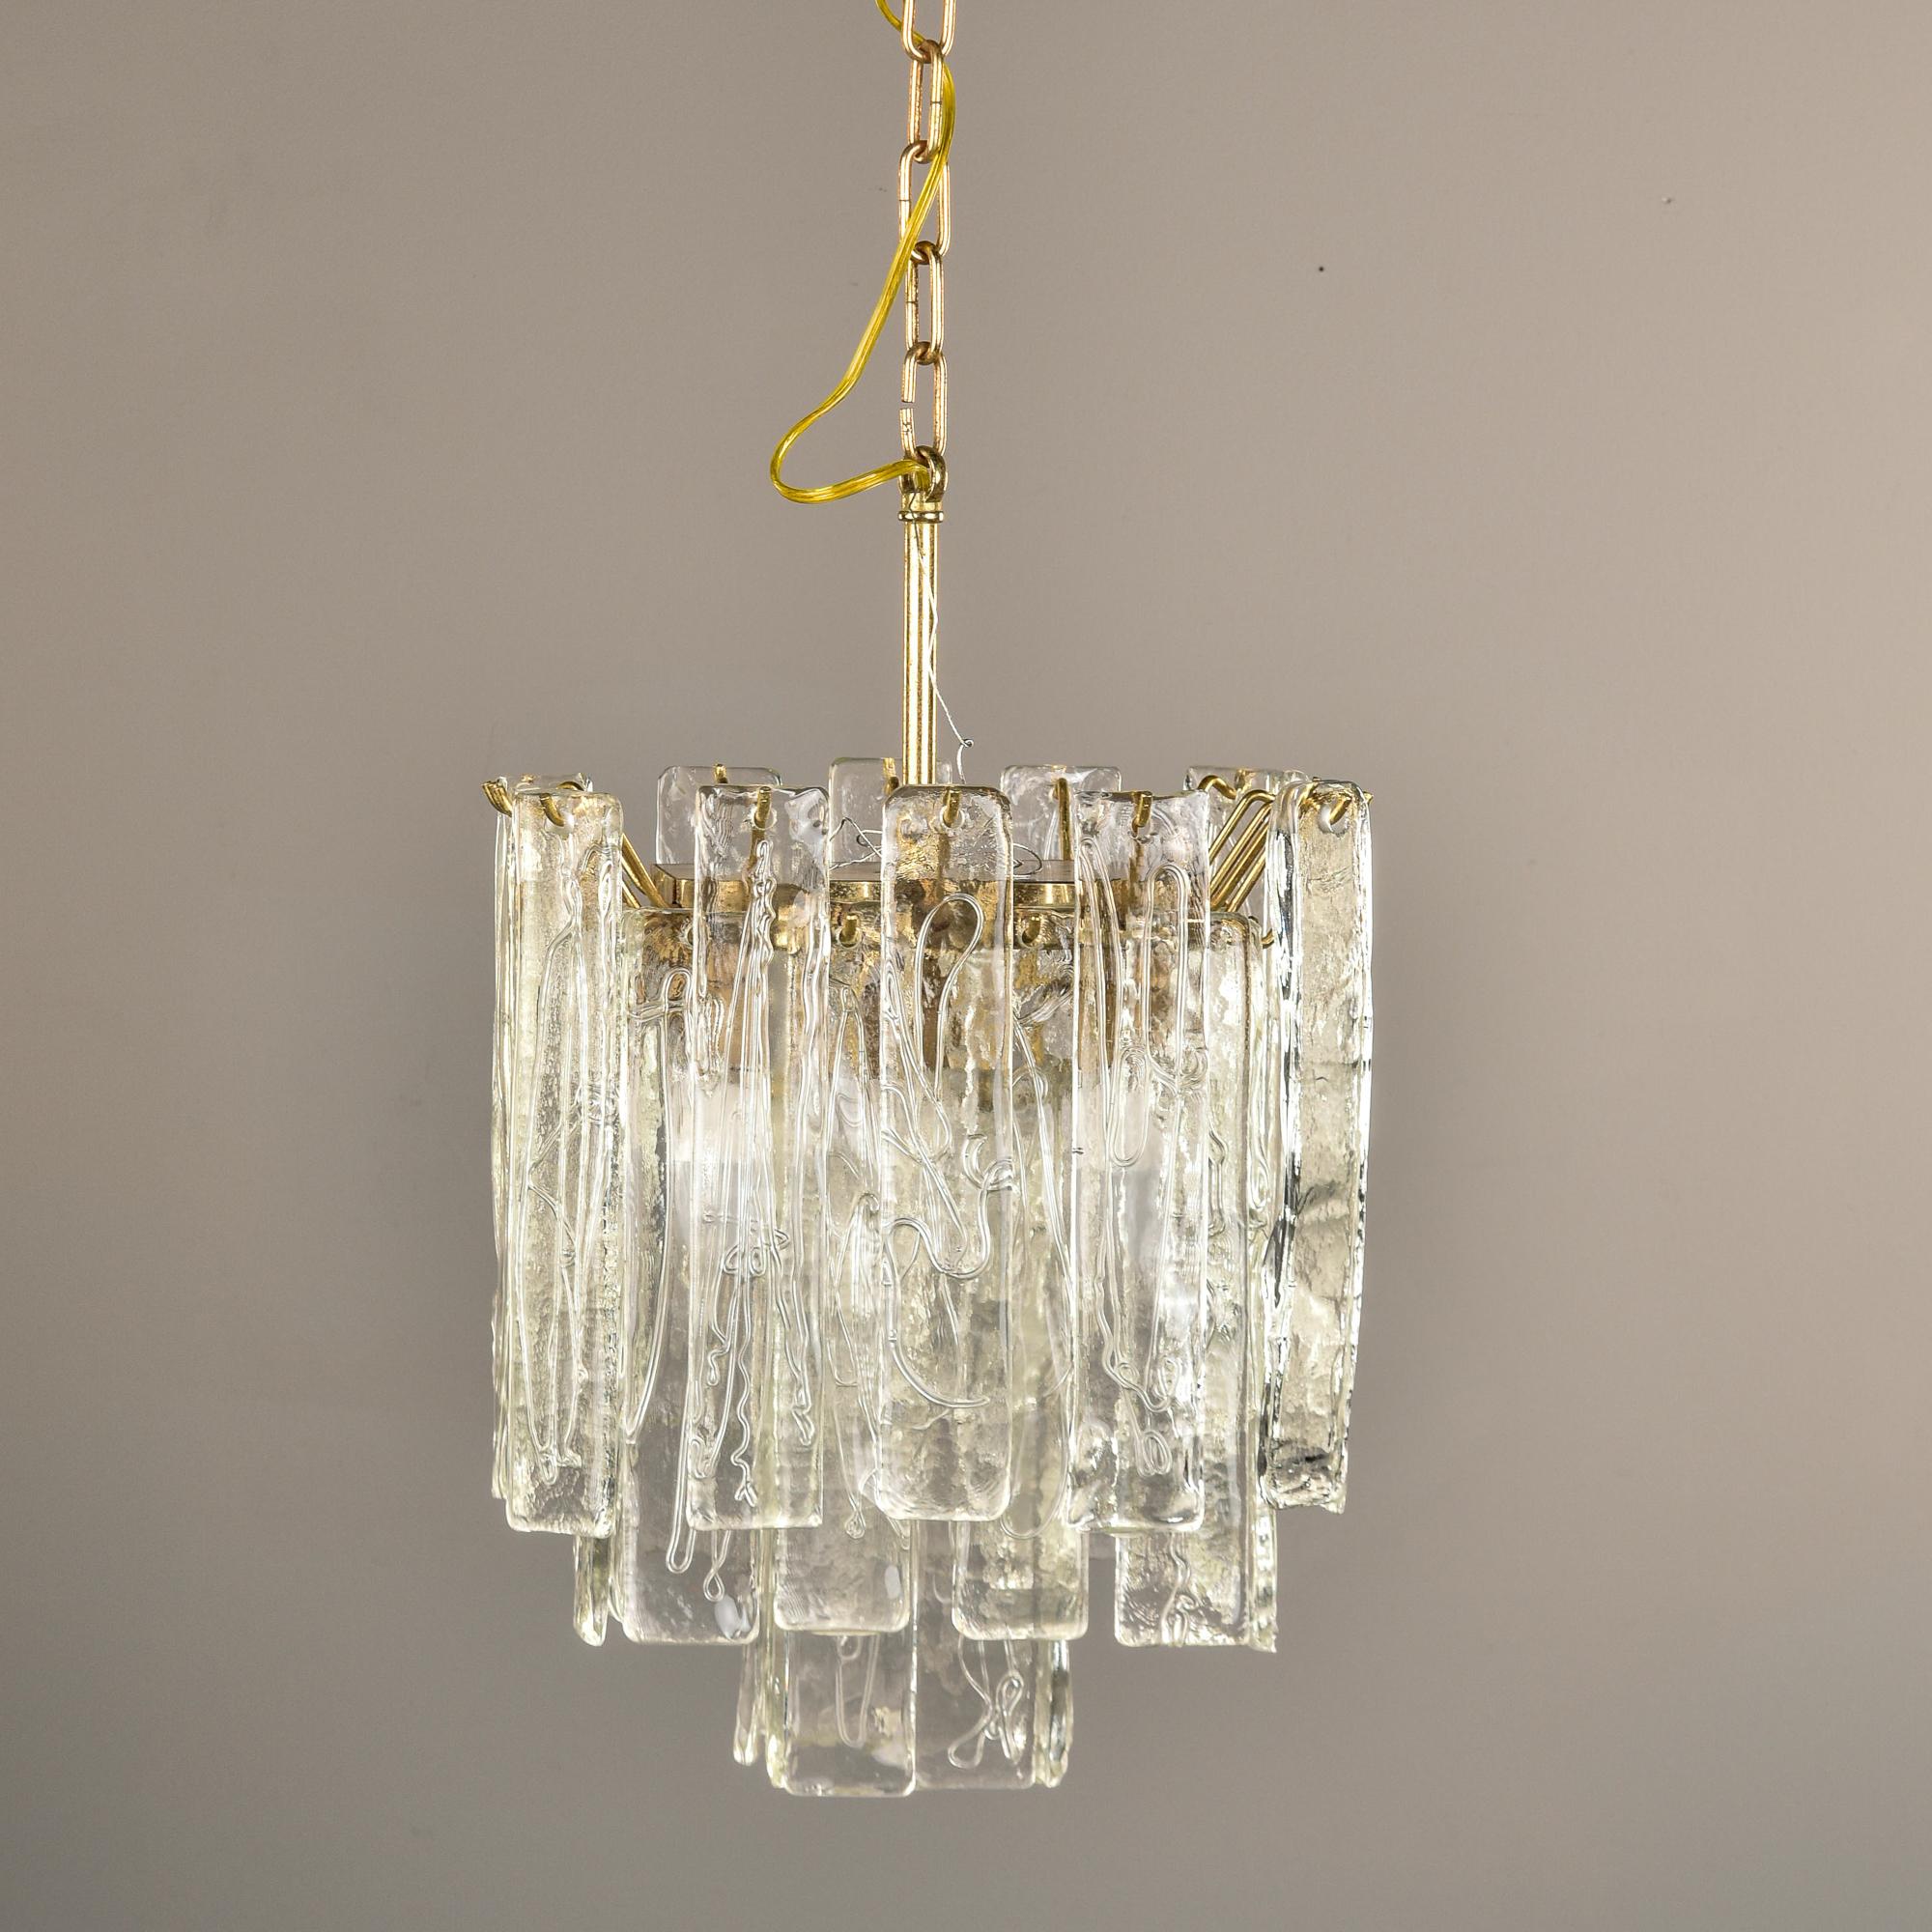 Trouvé en Italie, ce luminaire suspendu date des années 1960 et présente des pendentifs en verre de Murano suspendus à une armature en laiton poli. Les pendentifs sont rectangulaires, en verre de Murano clair avec des détails de texture de surface